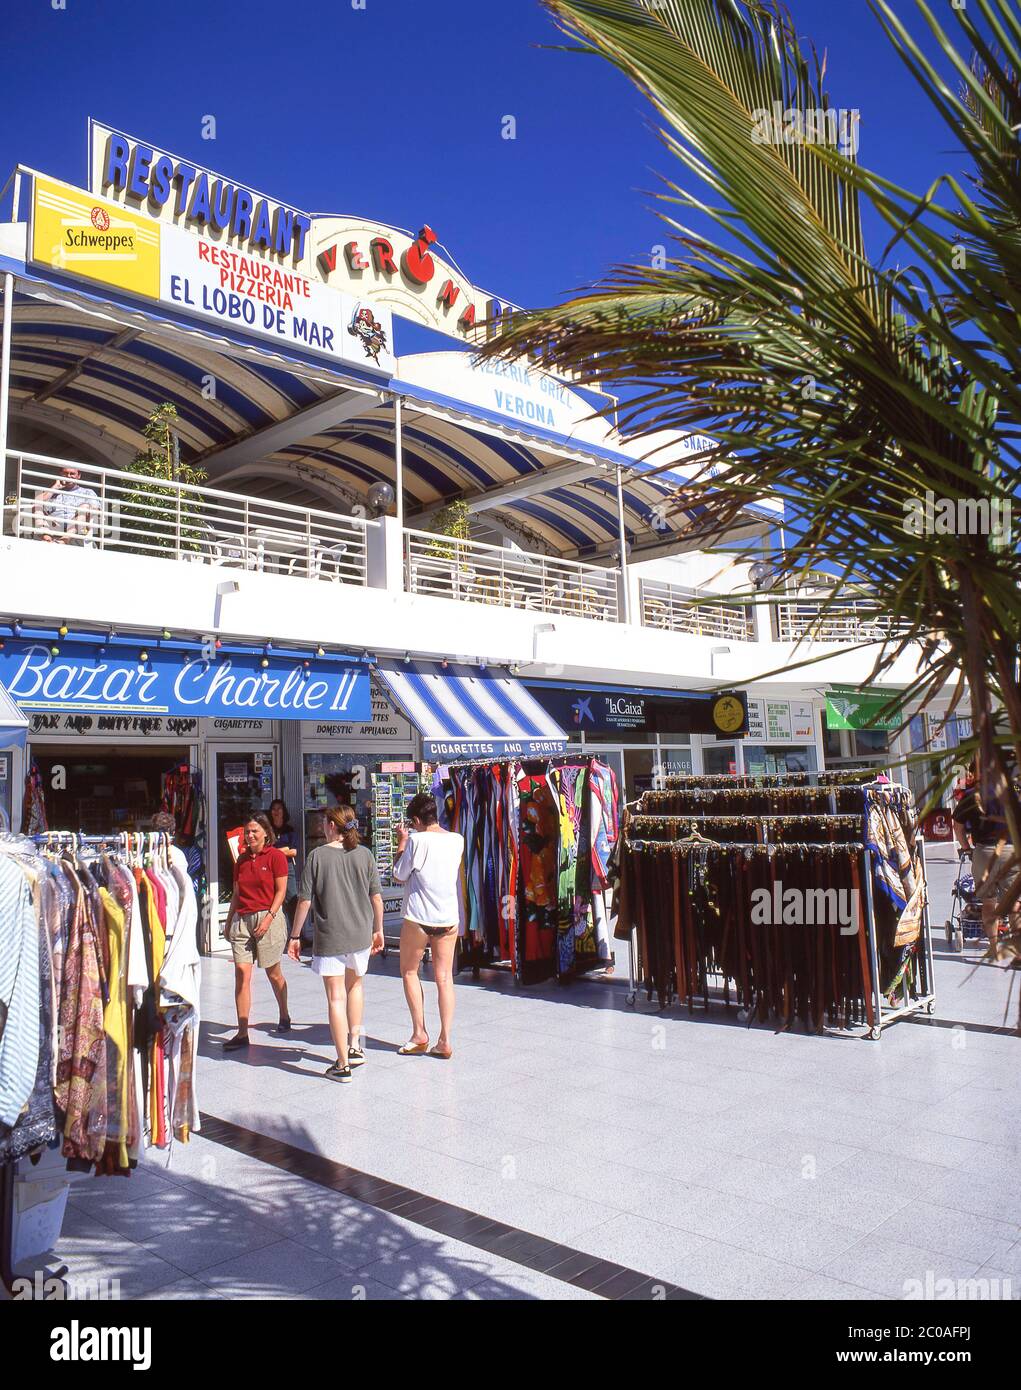 Promenade shopping complex, Playa de Matagorda, Puerto del Carmen, Lanzarote, Canary Islands, Spain Stock Photo